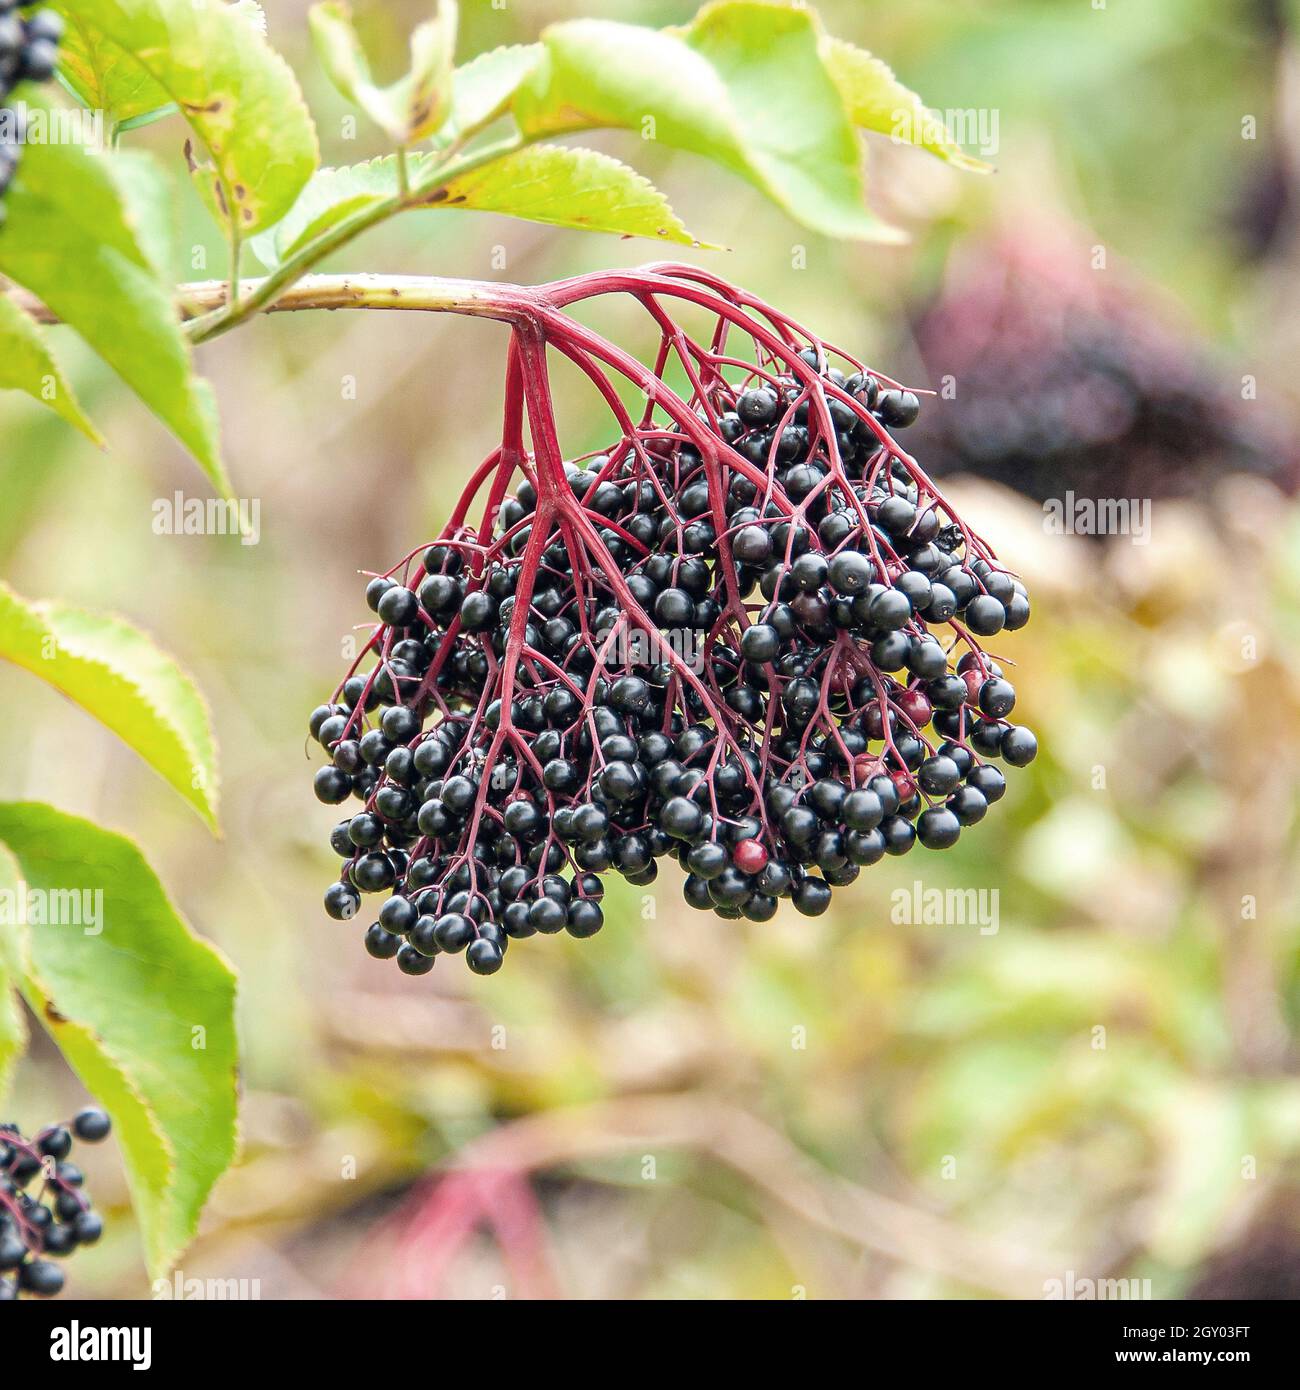 Sambuco nero europeo, Elderberry, sambuco nigra 'Haidegg 17', Sambucus nigra Haidegg 17), frutti della cultivar Haidegg 17, Germania Foto Stock